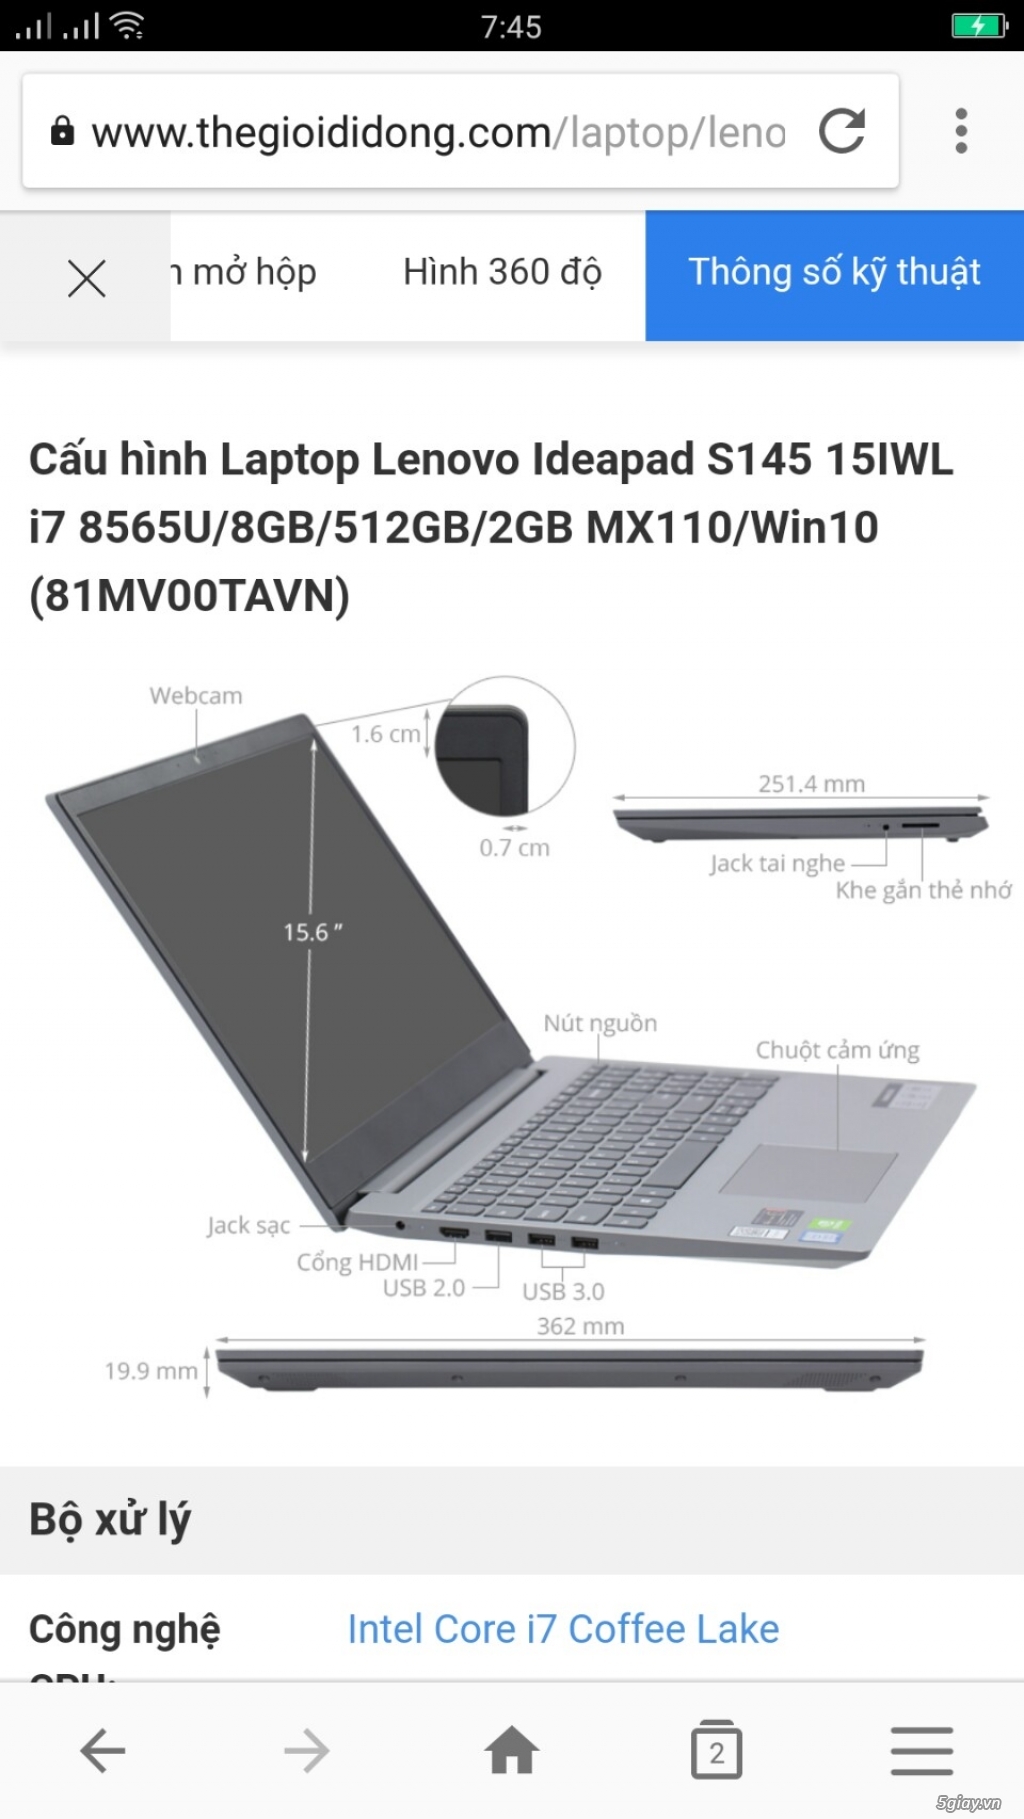 Cần bán Laptop Lenovo đồ họa, máy mới còn bảo hành - 2